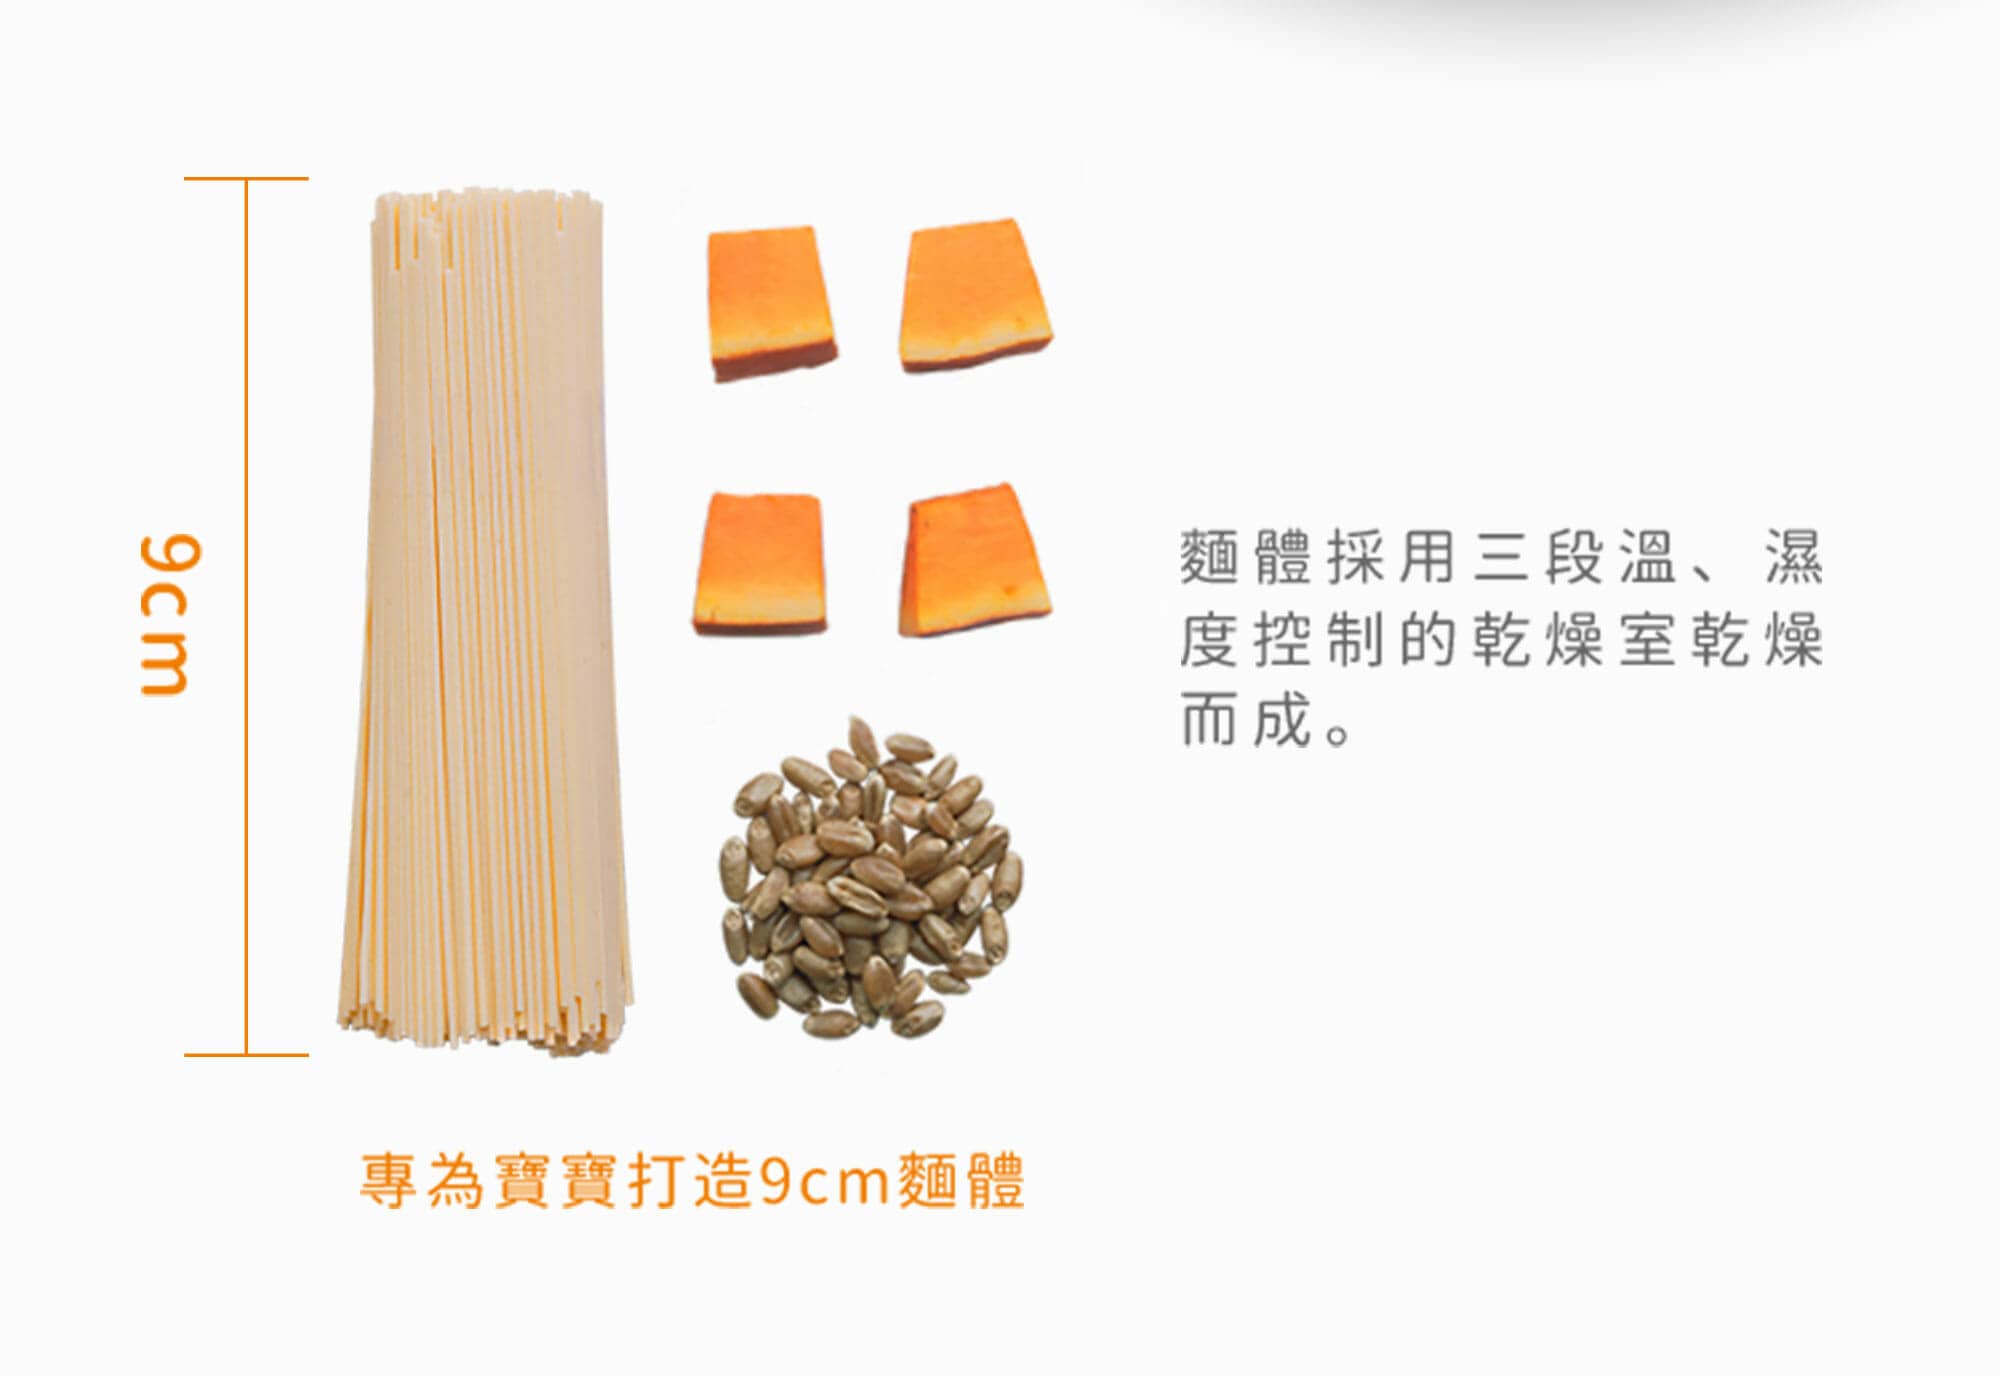 9公分特製麵體，採用三段溫濕度控制的乾燥室乾燥而成。